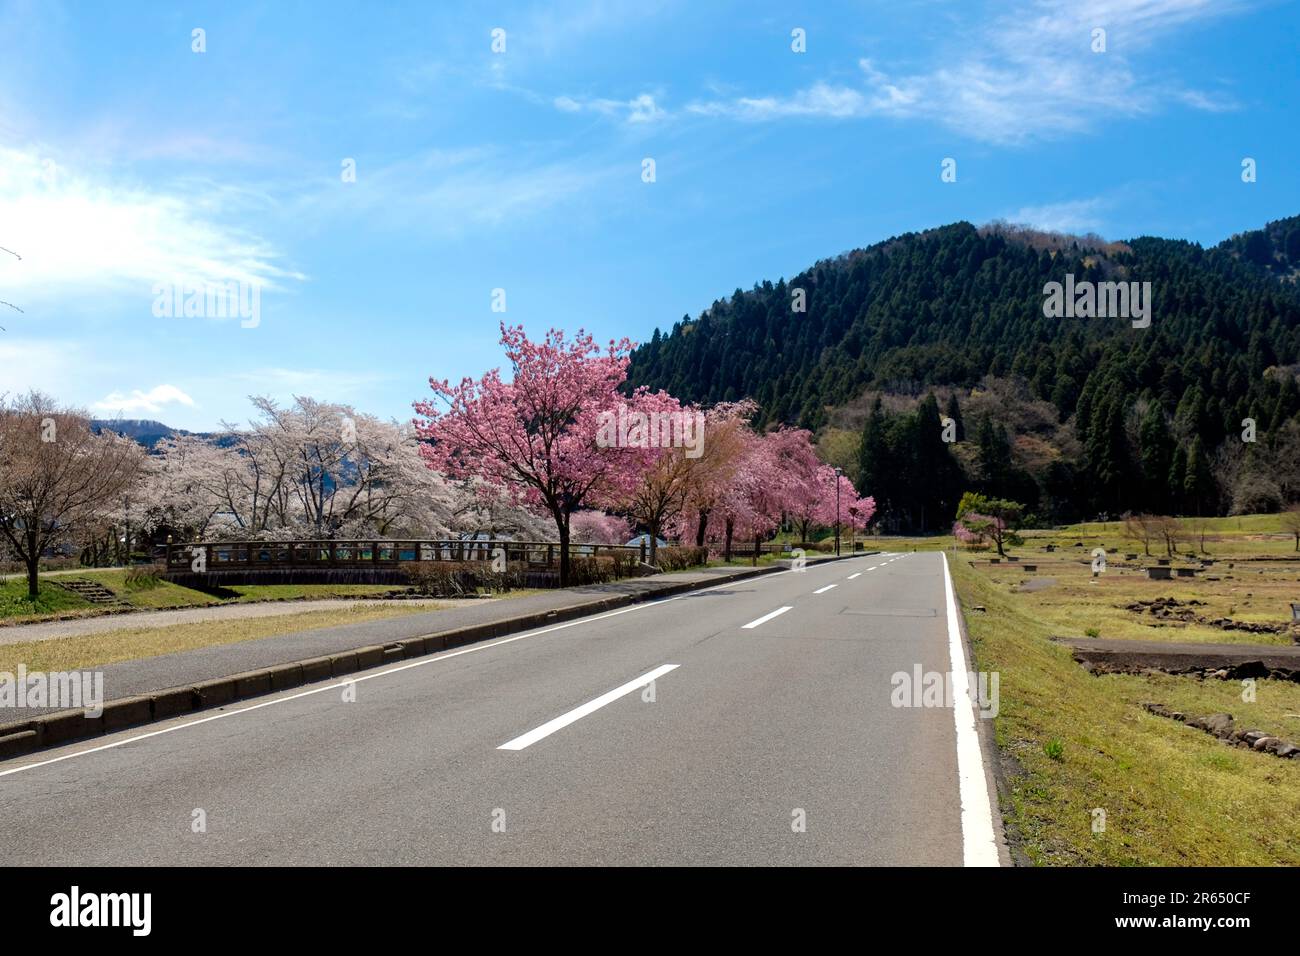 Cherry blossoms at the Ichijodani Asakura clan site Stock Photo